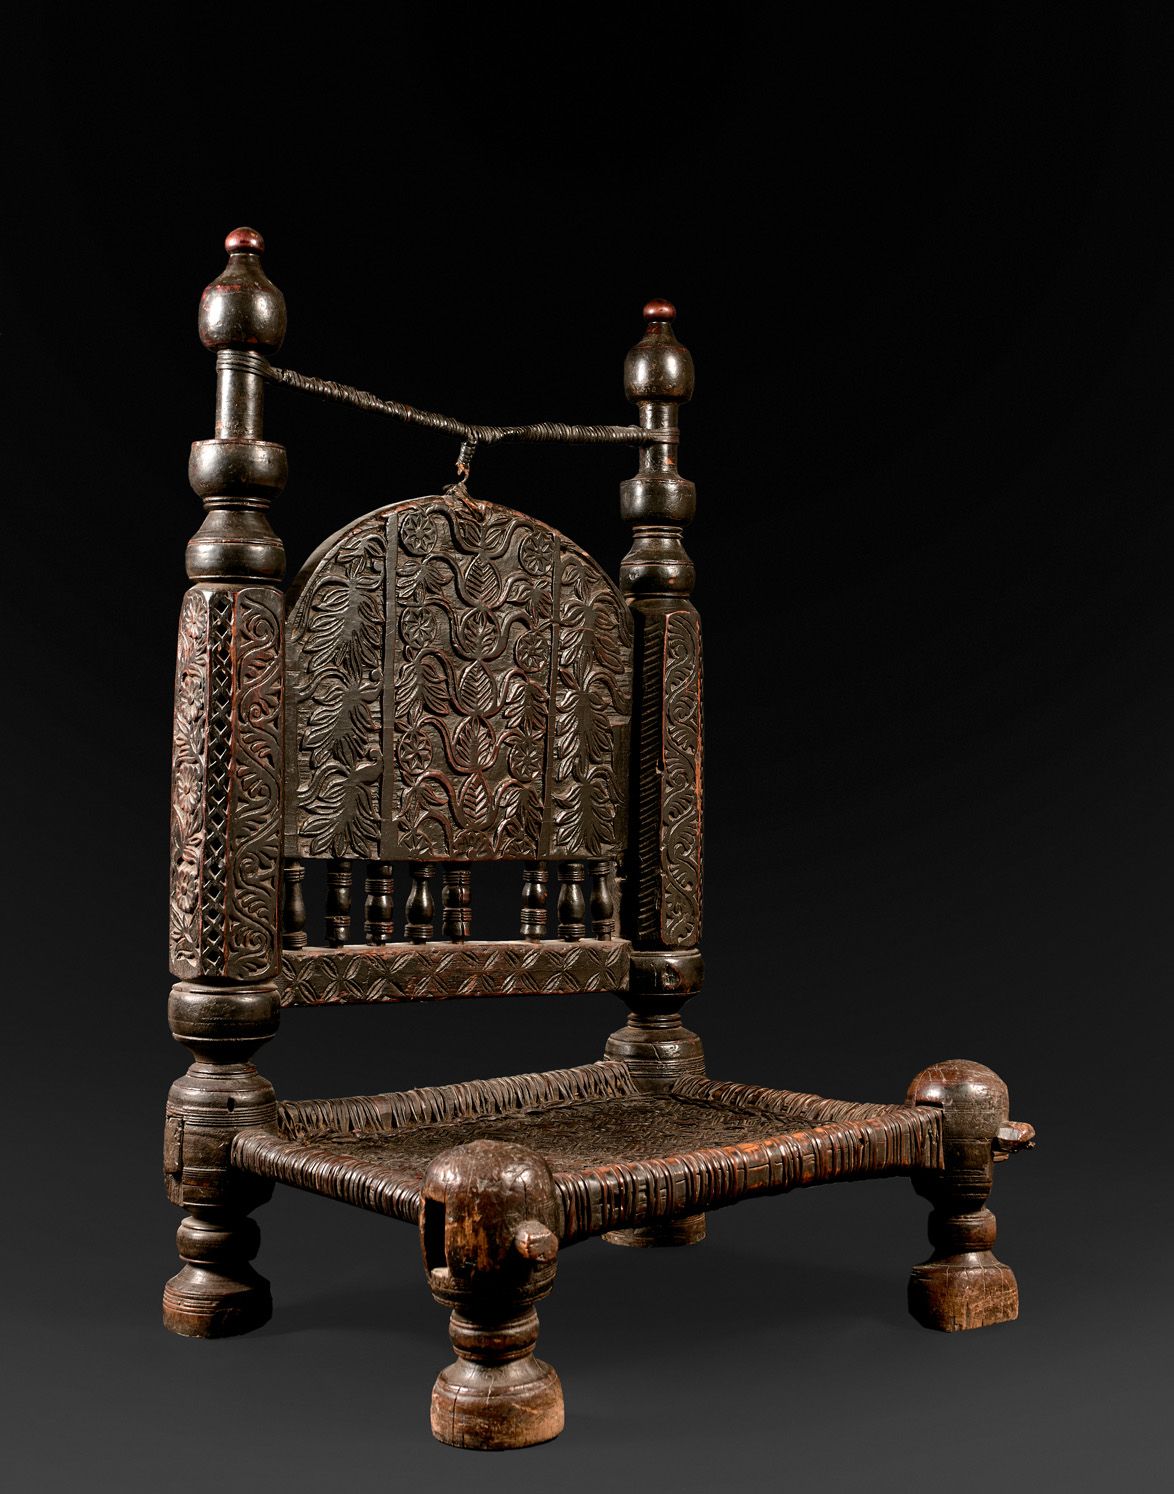 Null 木制矮椅，有编织的座椅和靠背，有雕刻着花卉图案的画廊。

阿富汗-巴基斯坦-19世纪末-20世纪初。

高度84 - 宽度53 - 深度43厘米